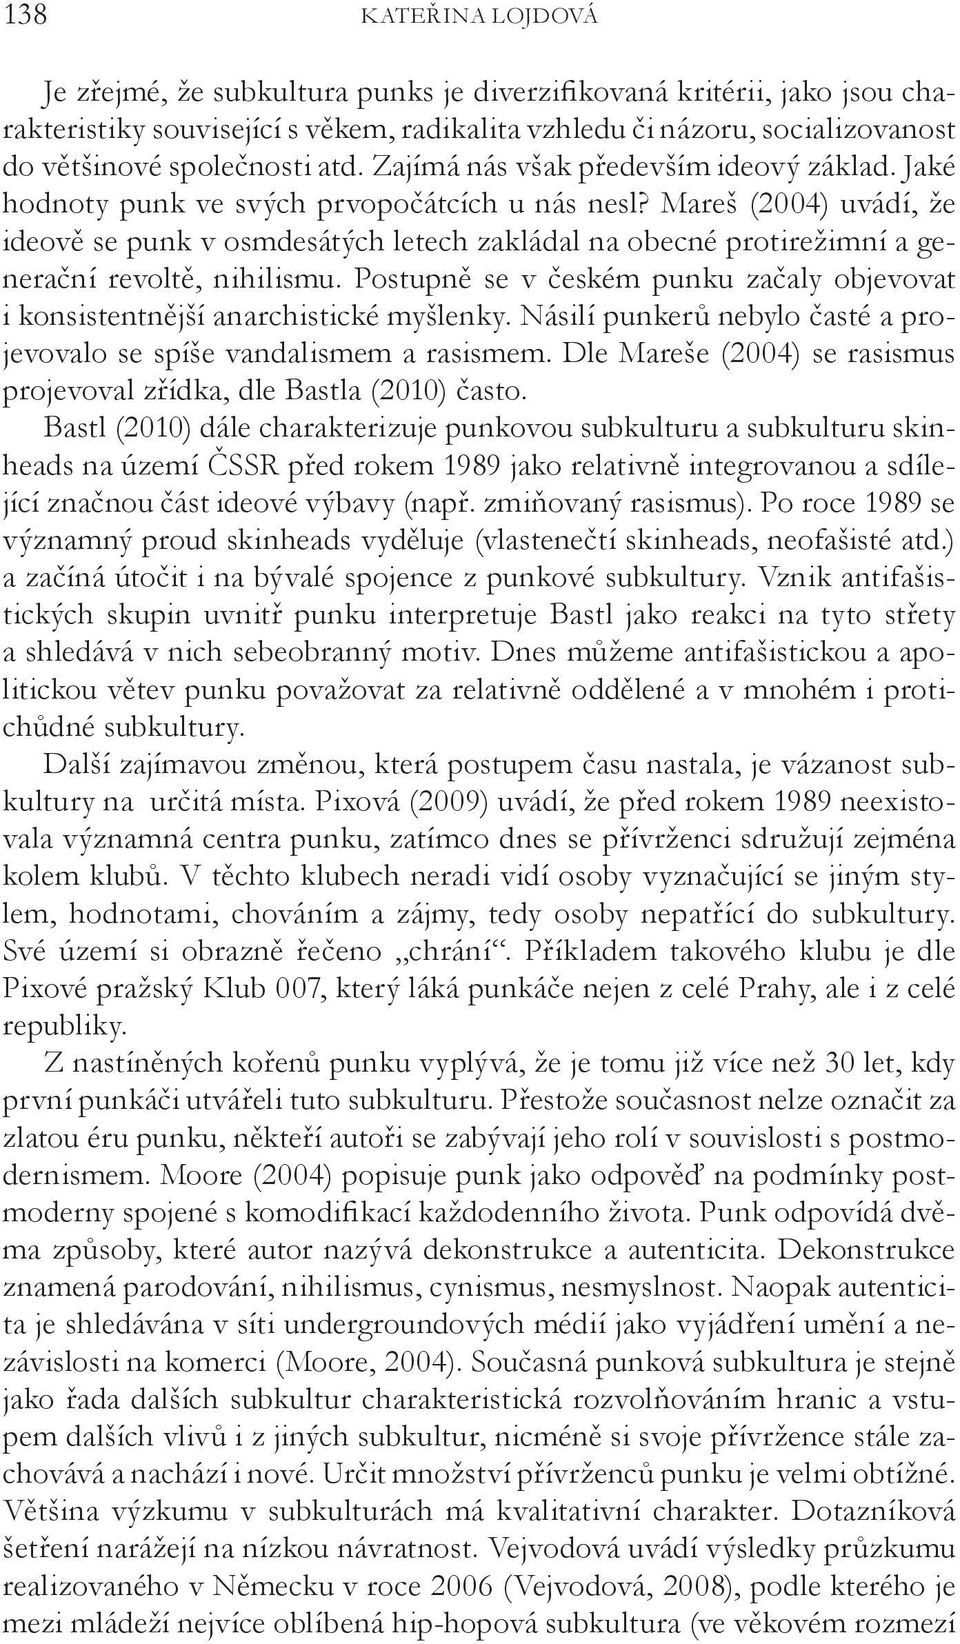 Mareš (2004) uvádí, že ideově se punk v osmdesátých letech zakládal na obecné protirežimní a generační revoltě, nihilismu.